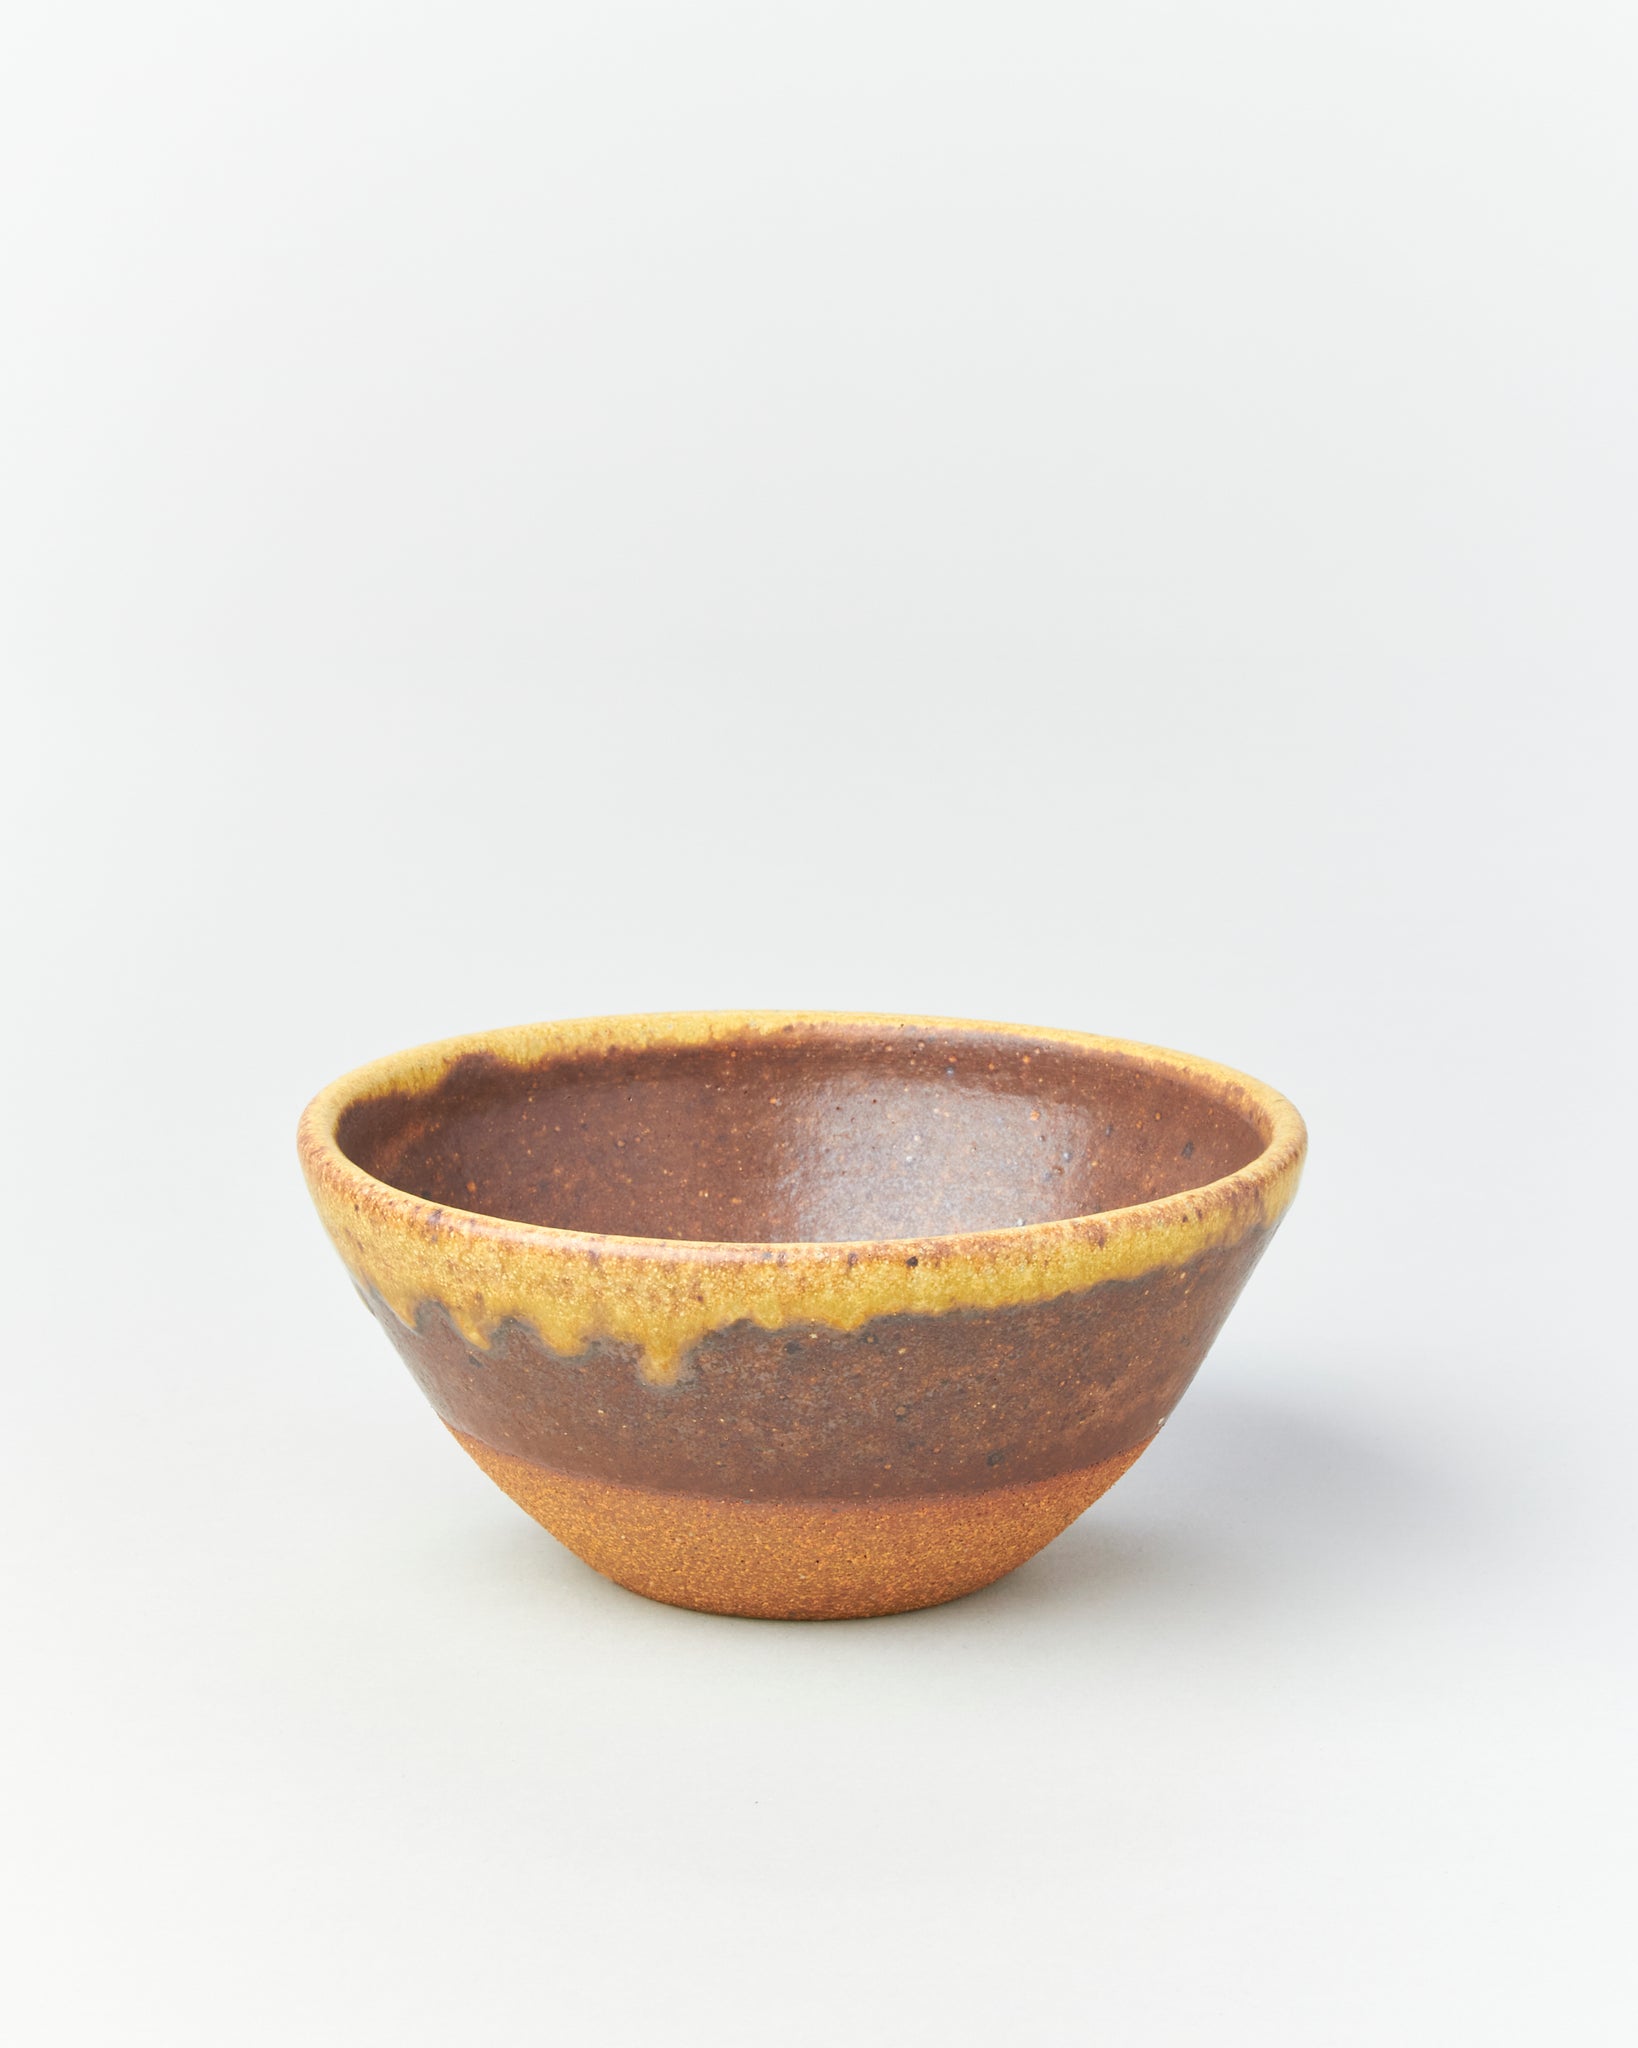 6-inch Bowl in Honey